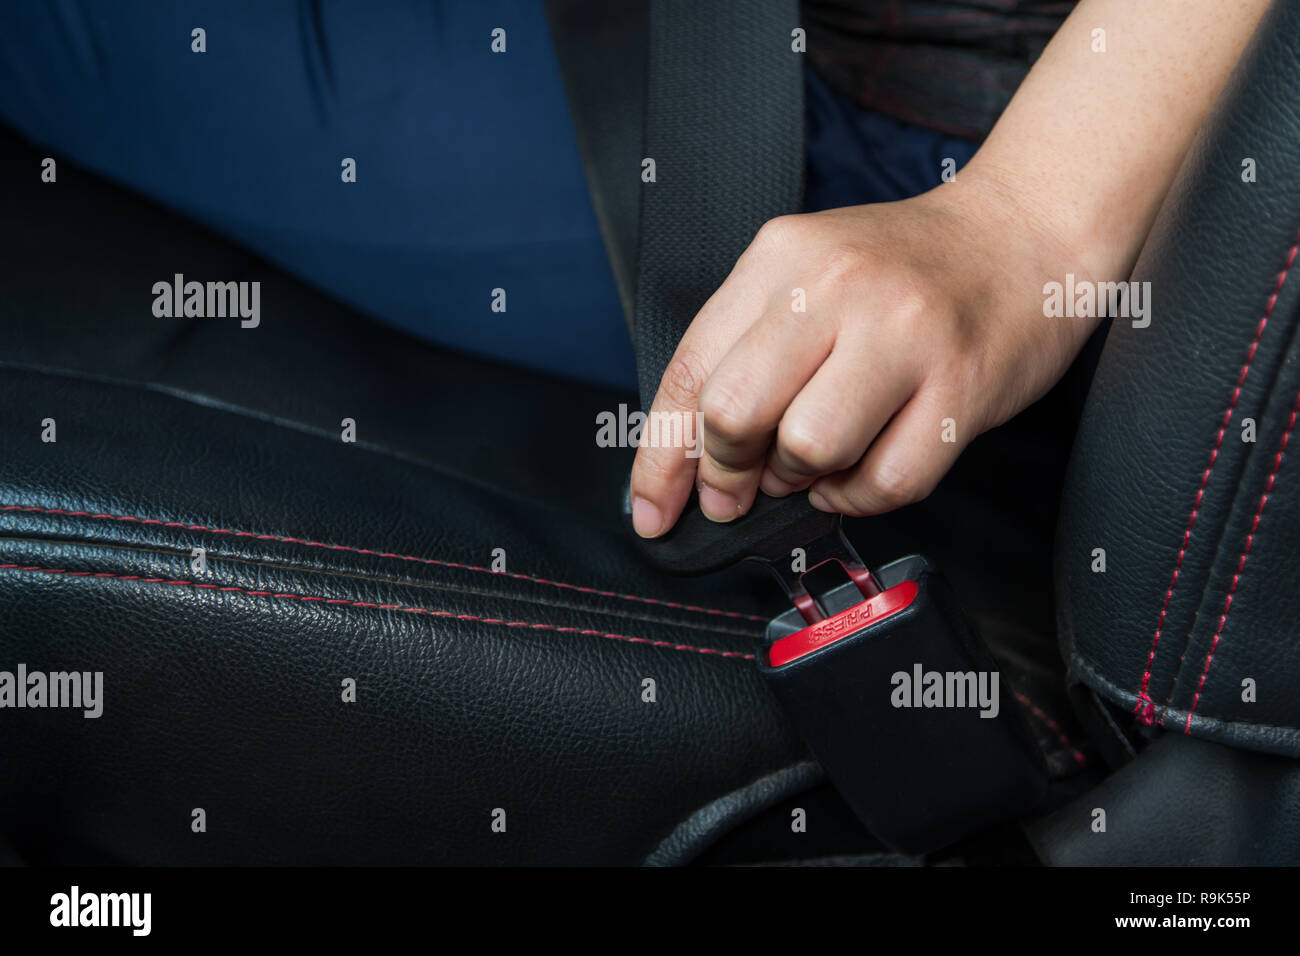 Auto Sicherheitsgurt. Frau befestigt ist der Sicherheitsgurt auf dem Auto  sicheres Fahren. Sicherheitsgurt in der Hand Stockfotografie - Alamy